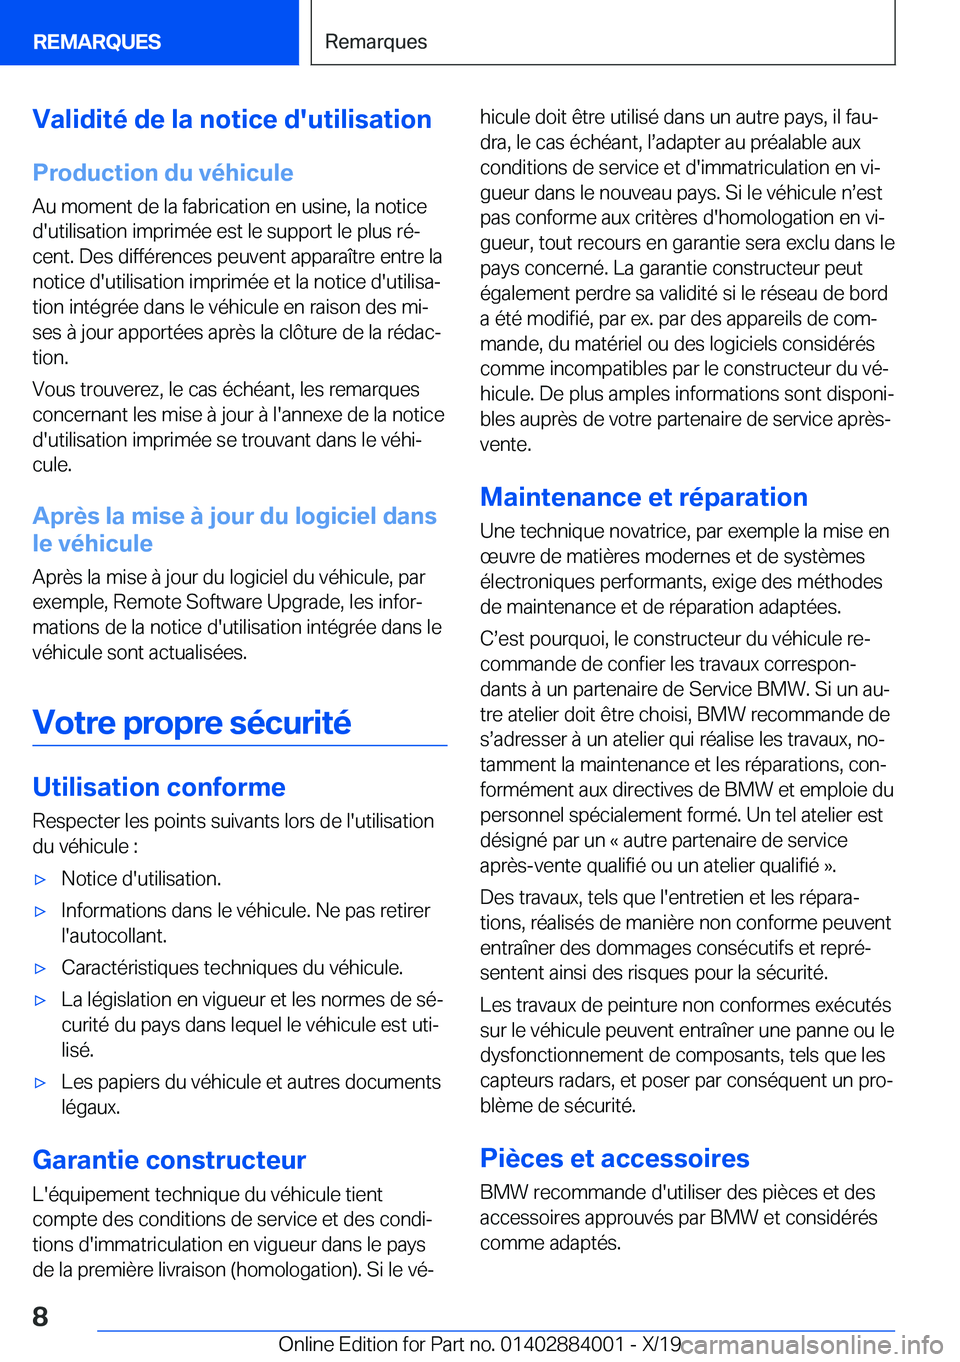 BMW X7 2020  Notices Demploi (in French) �V�a�l�i�d�i�t�é��d�e��l�a��n�o�t�i�c�e��d�'�u�t�i�l�i�s�a�t�i�o�n
�P�r�o�d�u�c�t�i�o�n��d�u��v�é�h�i�c�u�l�e
�A�u��m�o�m�e�n�t��d�e��l�a��f�a�b�r�i�c�a�t�i�o�n��e�n��u�s�i�n�e�,��l